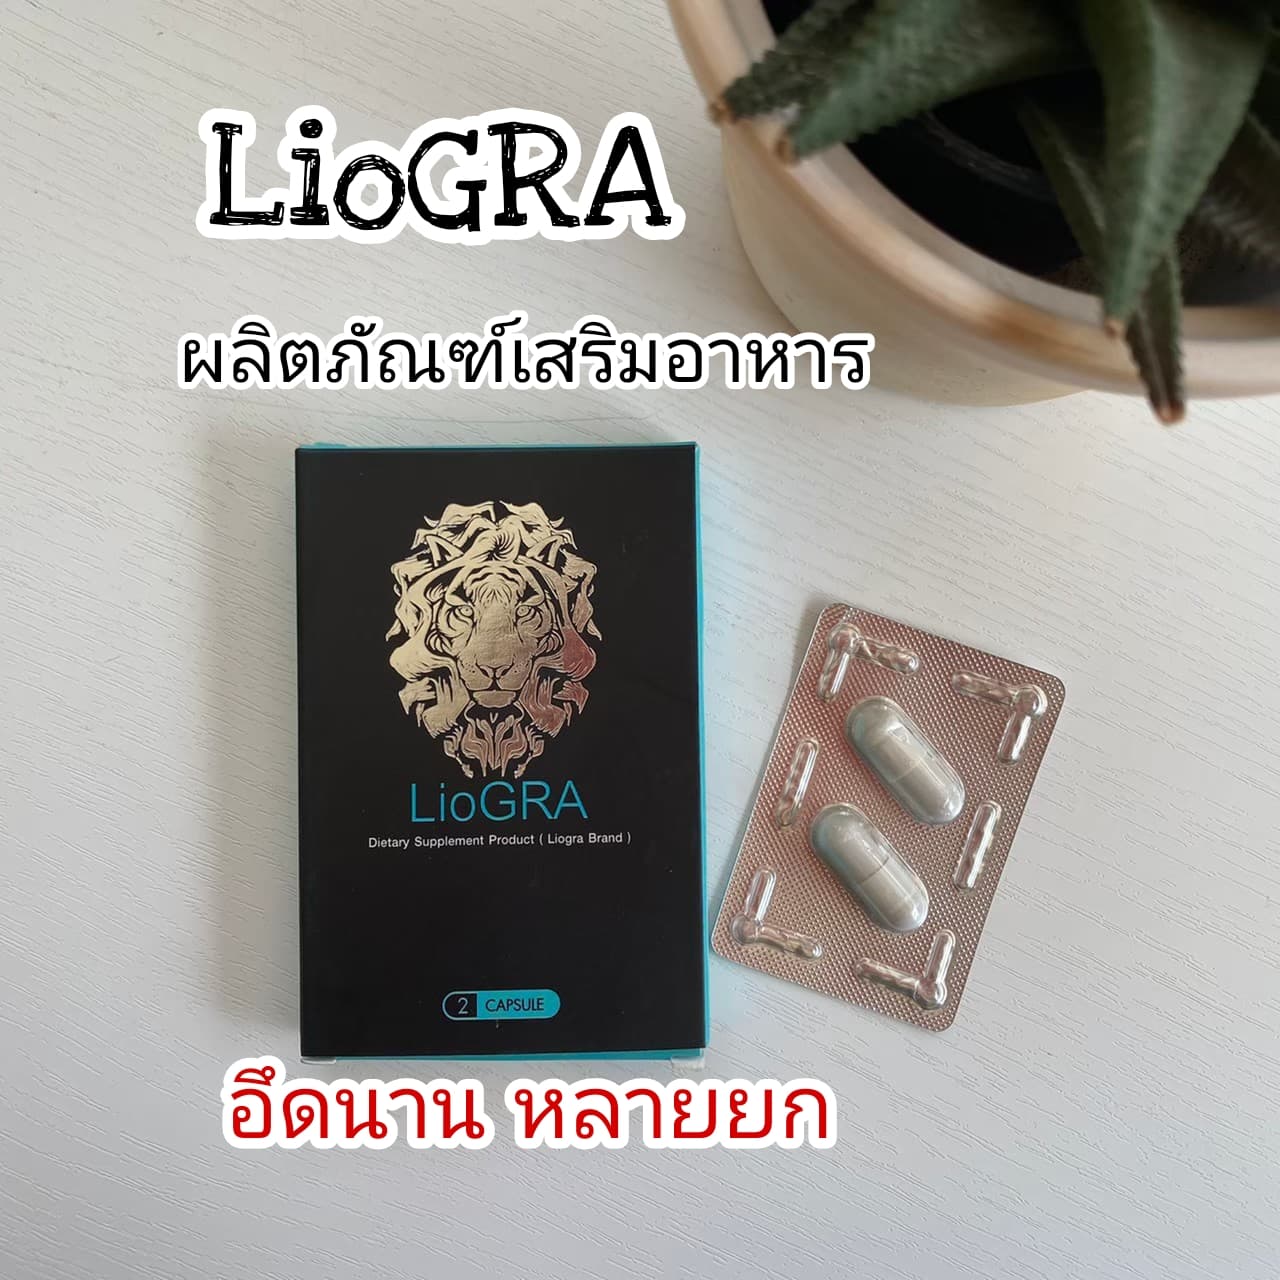 LioGRA ขย่ม ความ มัน ไลโอกร้า ไม่ลอง คือพลาด